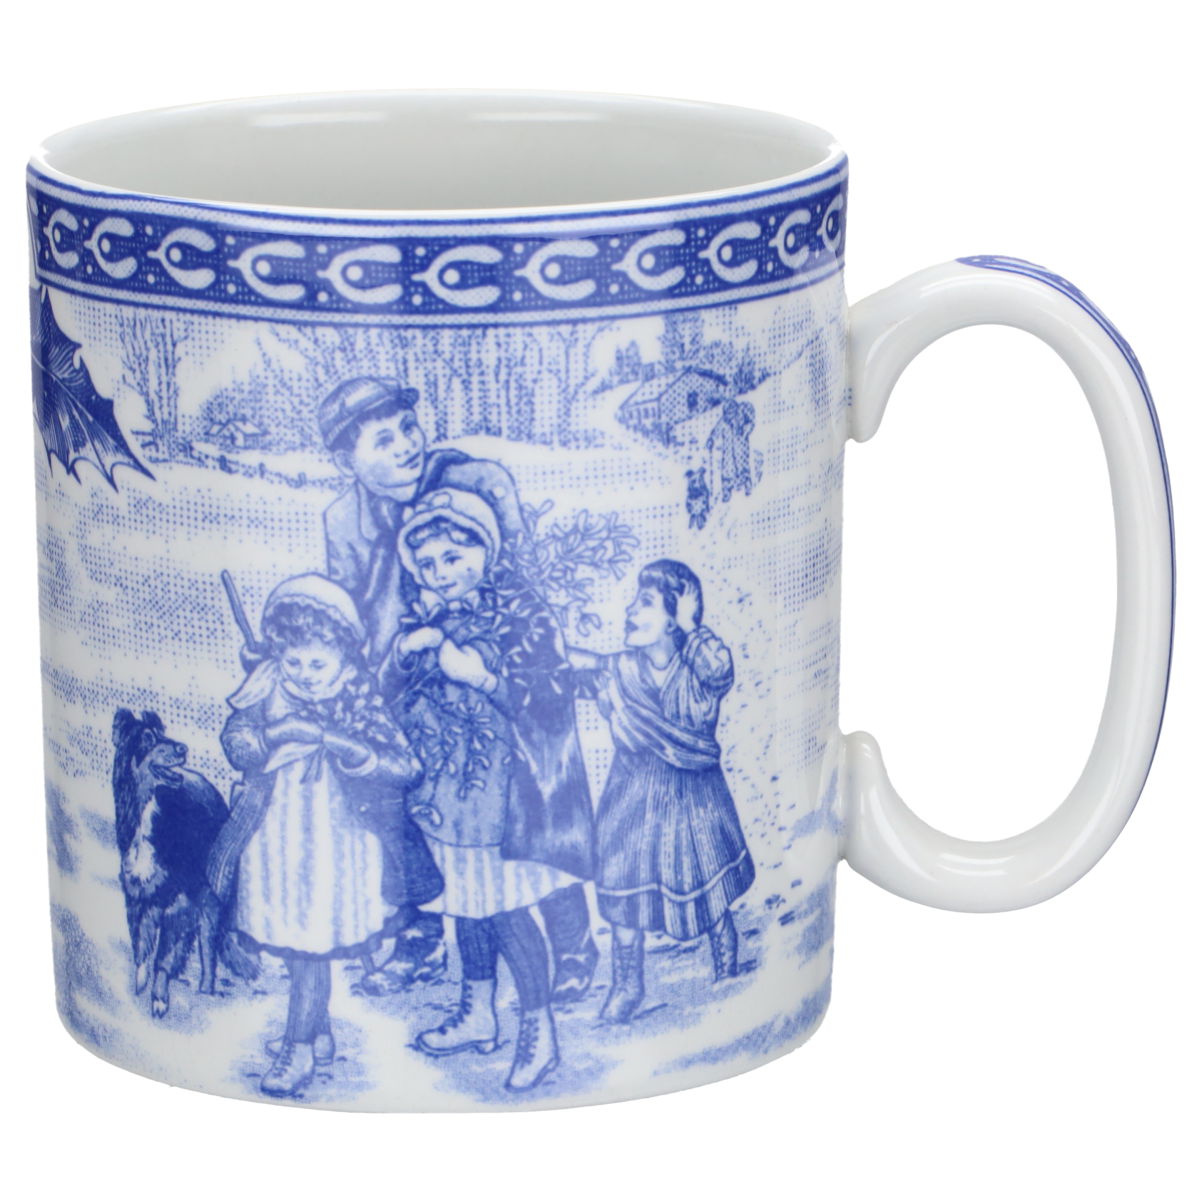 Victorian Children Mug Collection